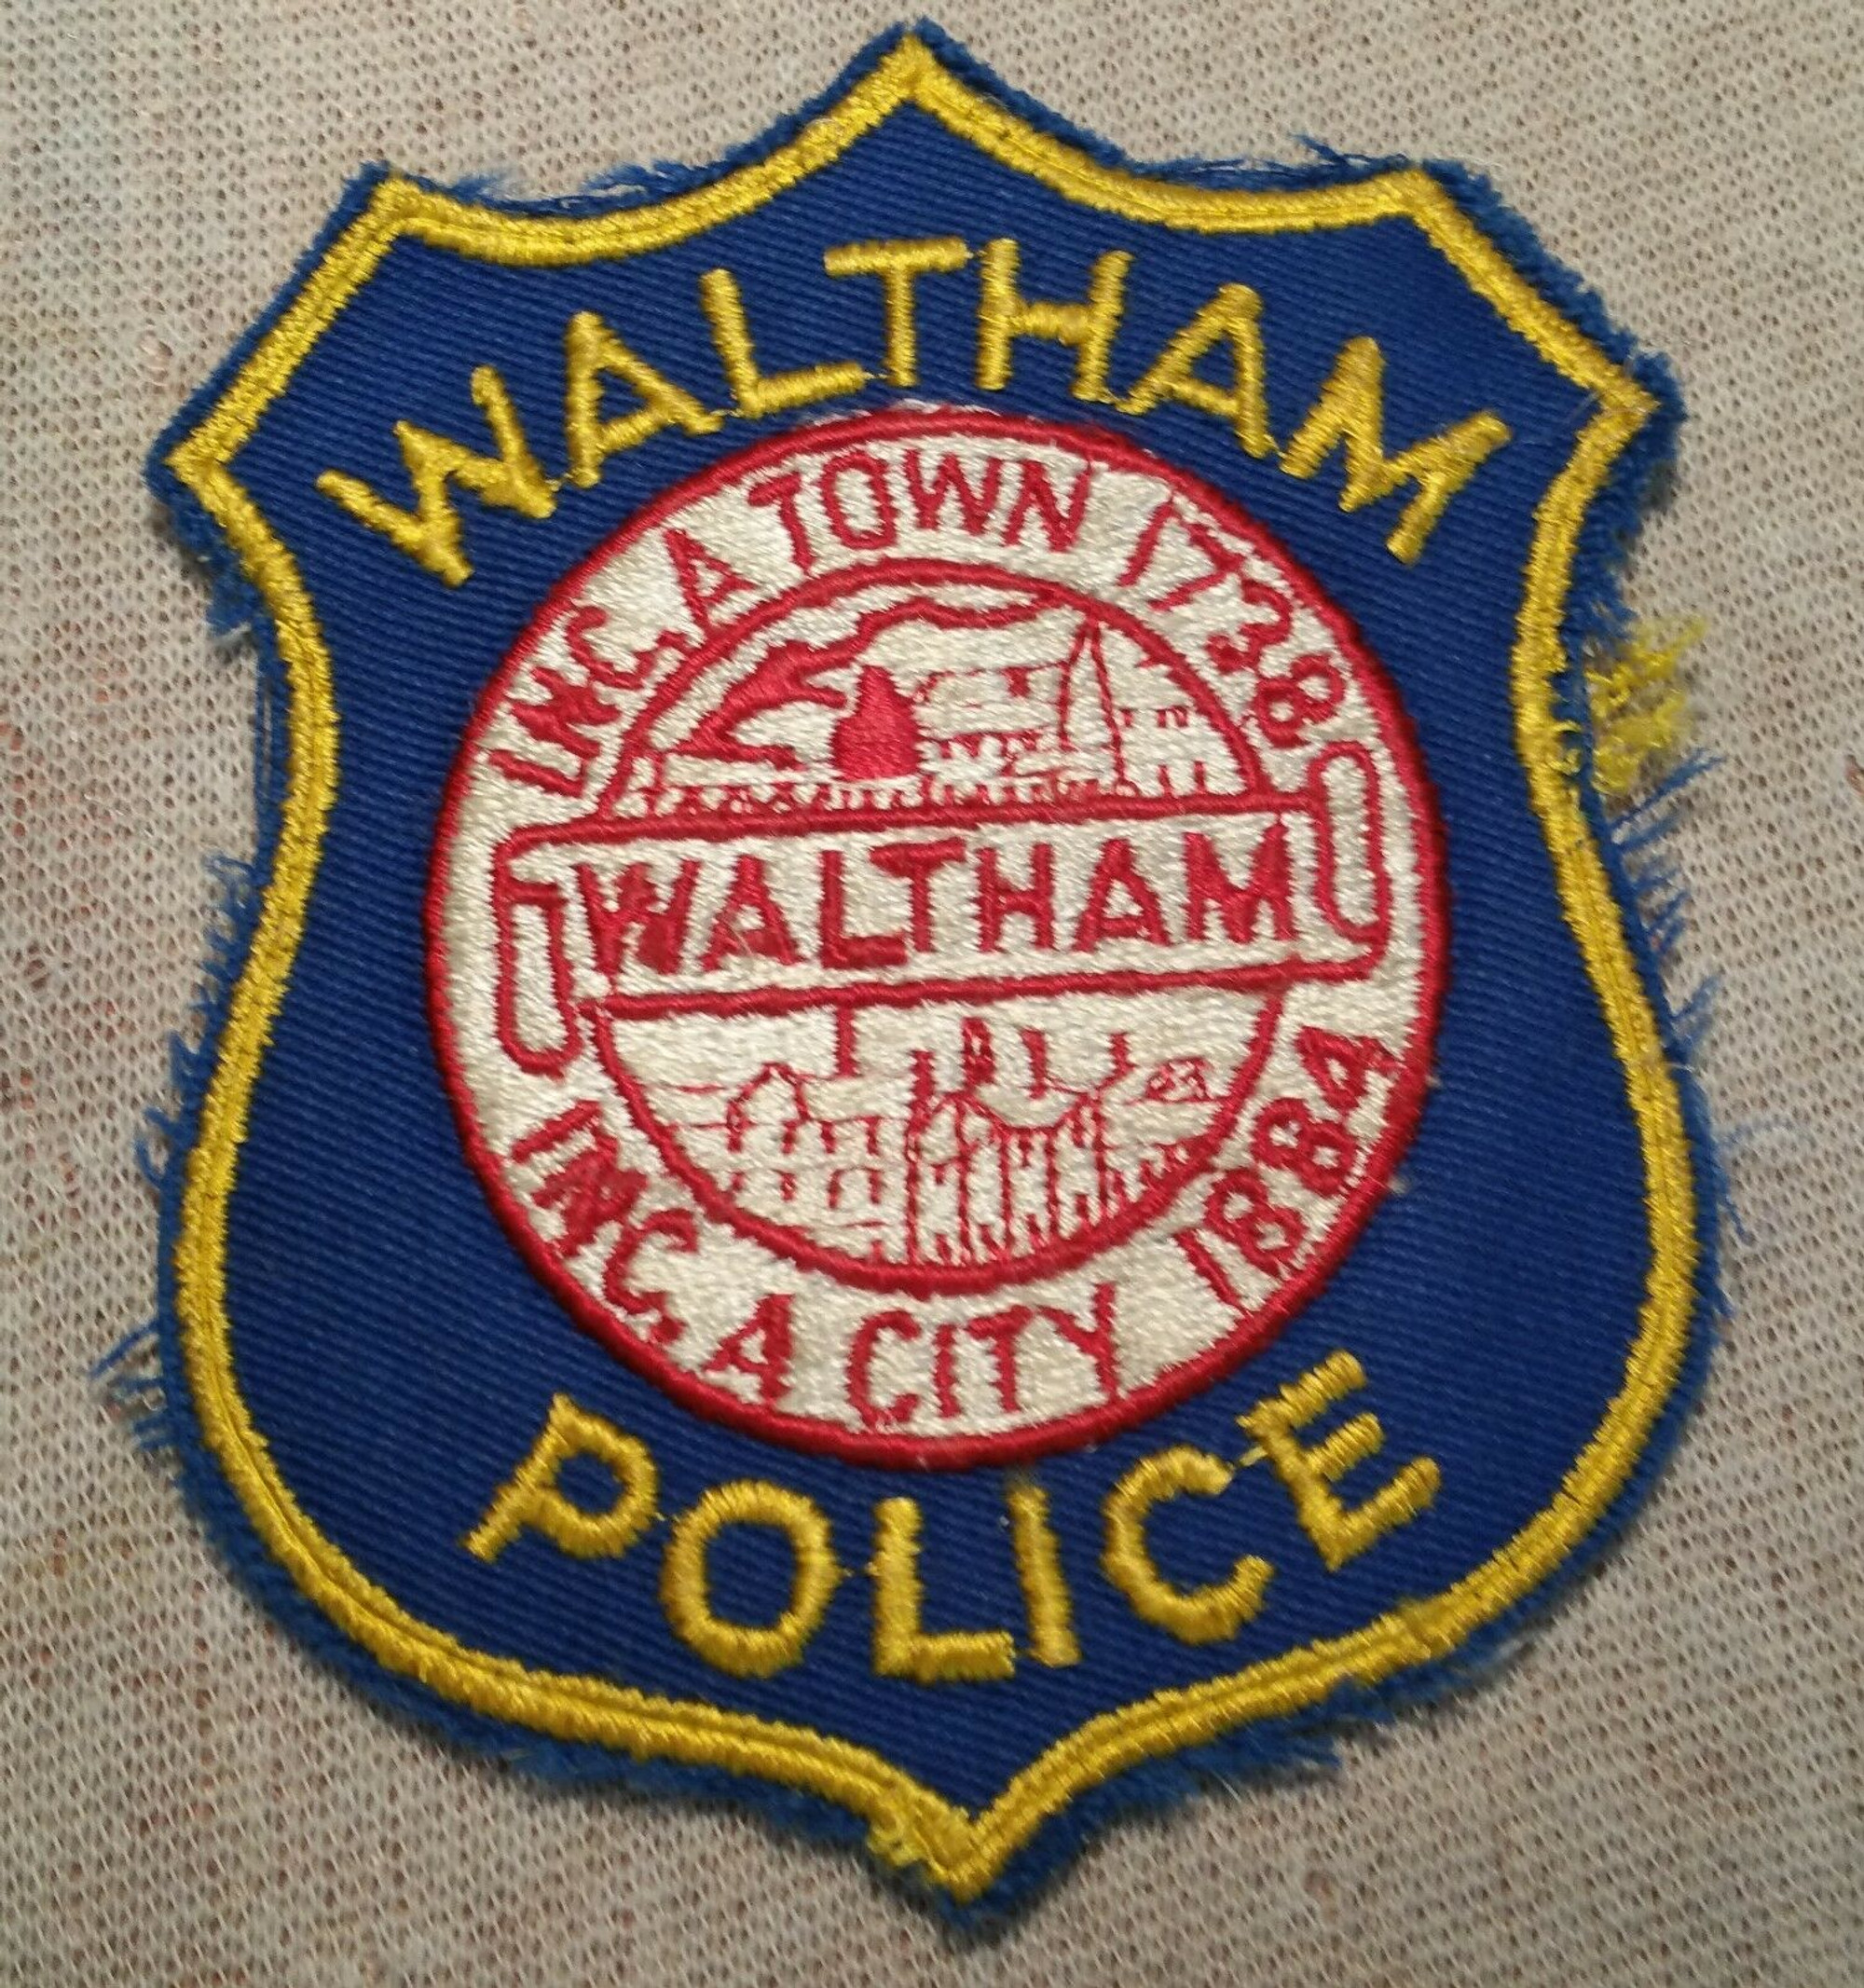 Waltham MA Police Patch